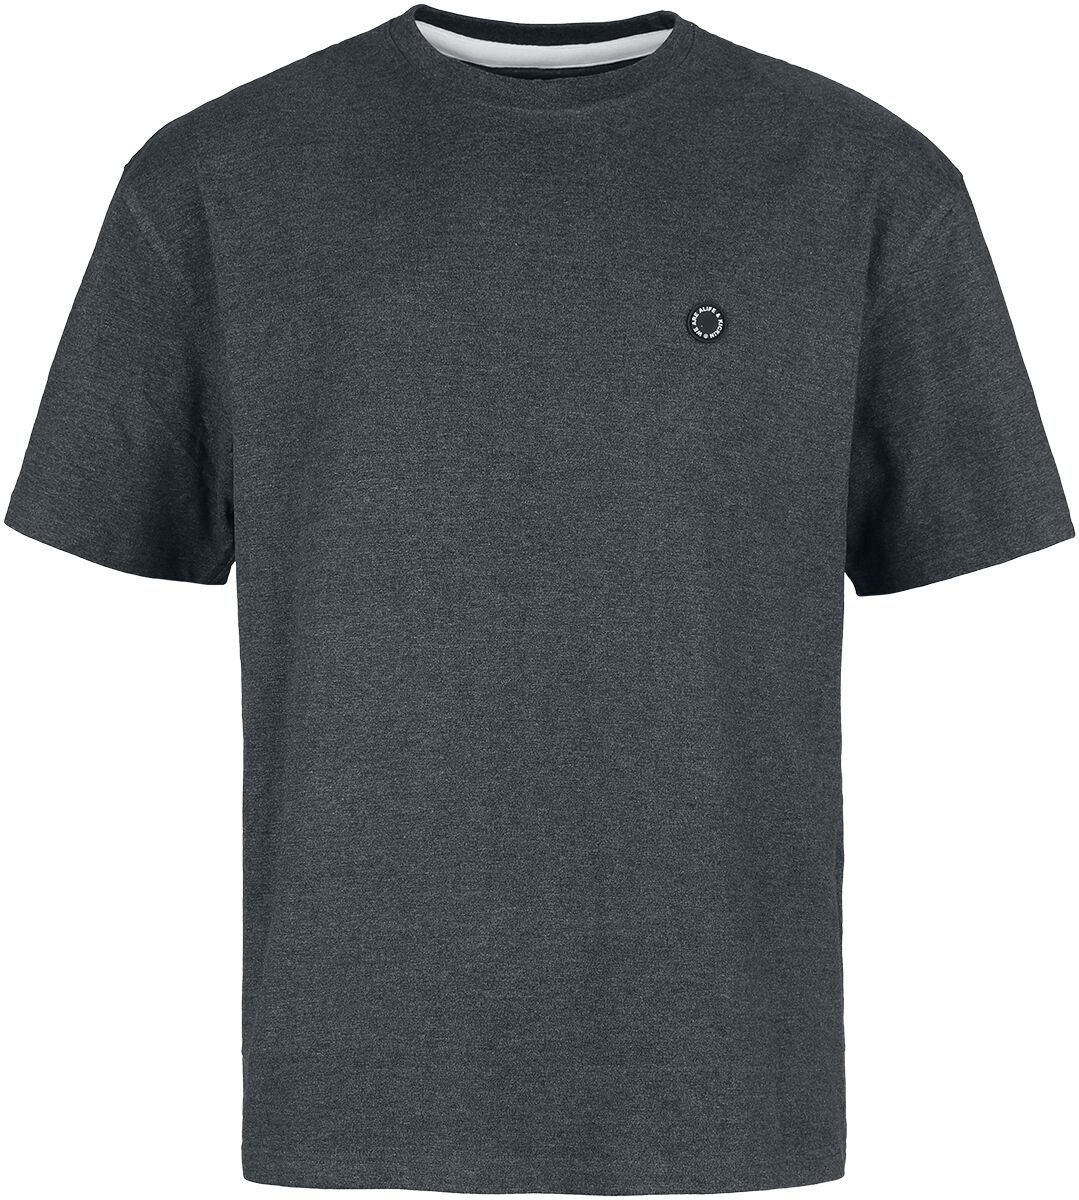 Alife and Kickin T-Shirt - PittAK A Shirt - M - für Männer - Größe M - anthrazit